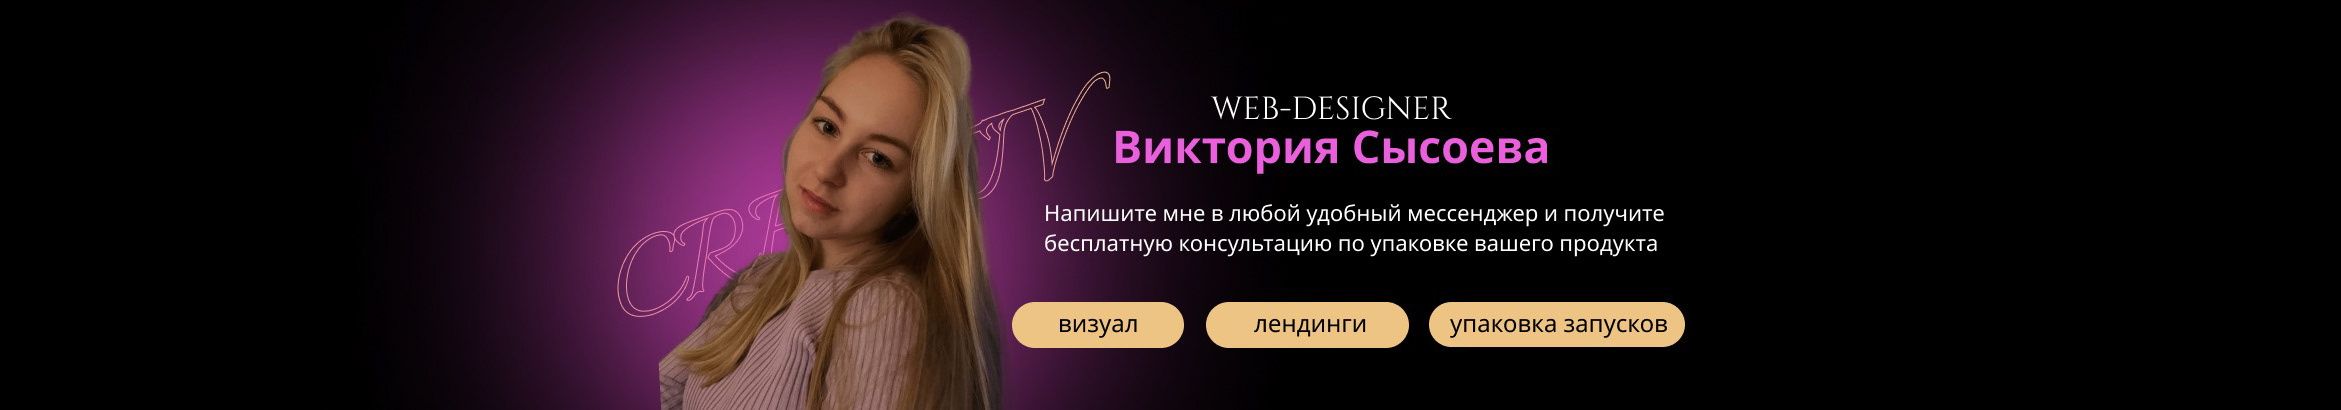 Profil-Banner von Viktoria Sysoeva